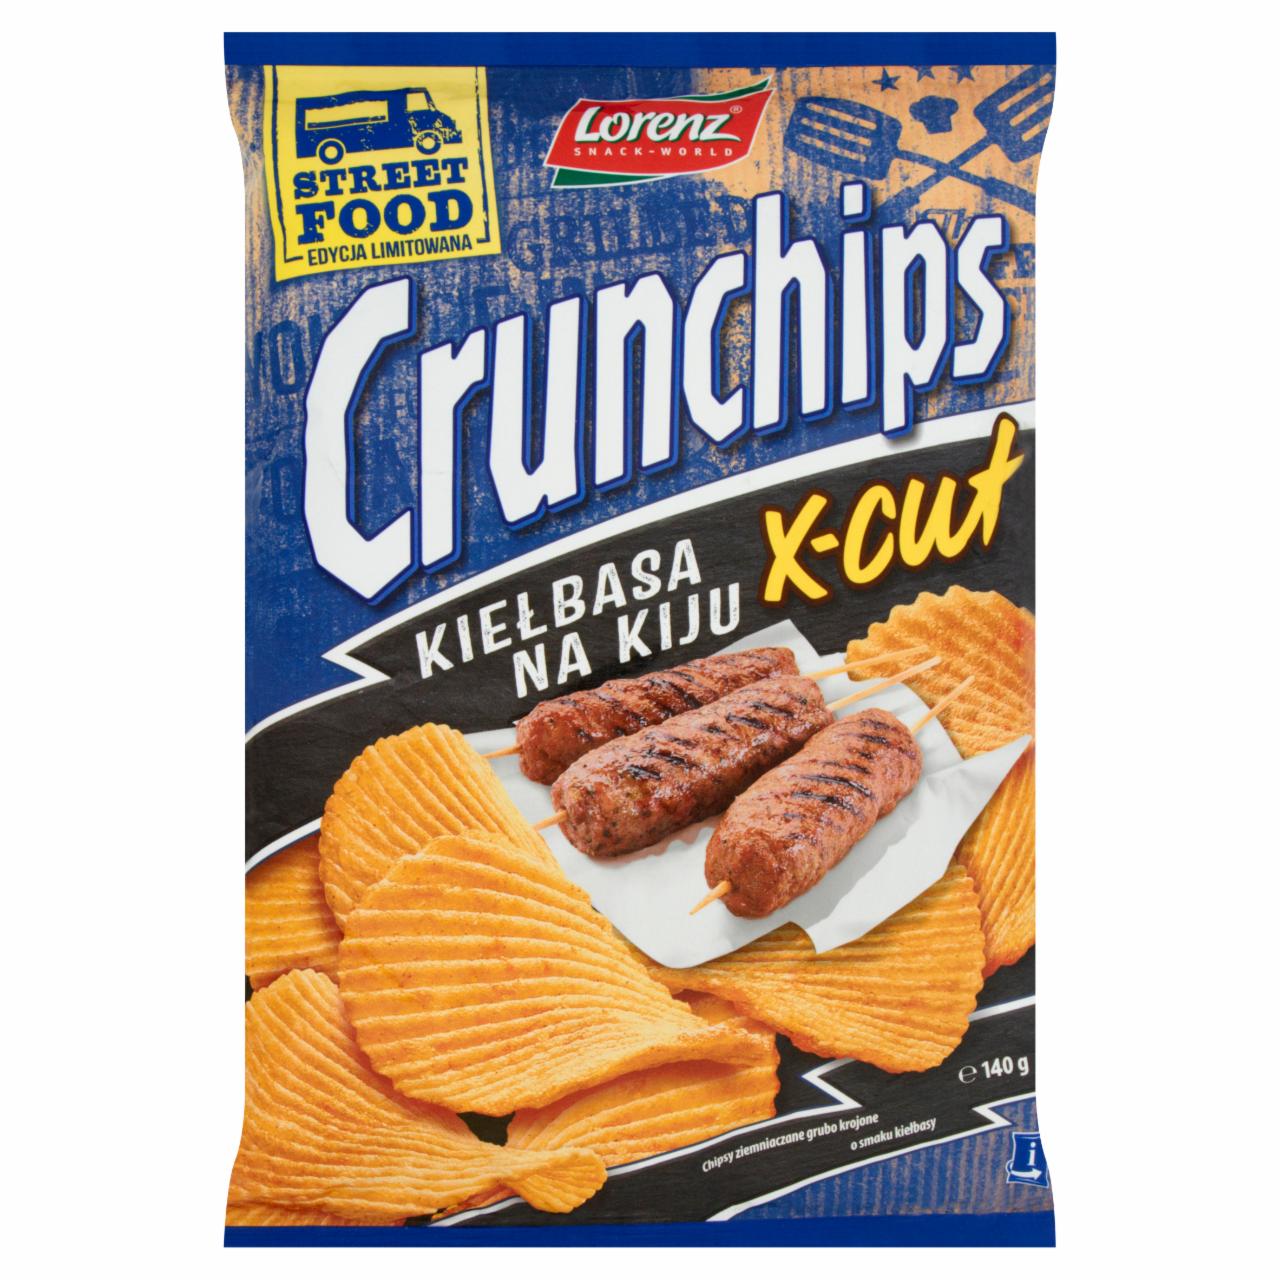 Zdjęcia - Crunchips X-Cut Kiełbasa na kiju Chipsy ziemniaczane 140 g